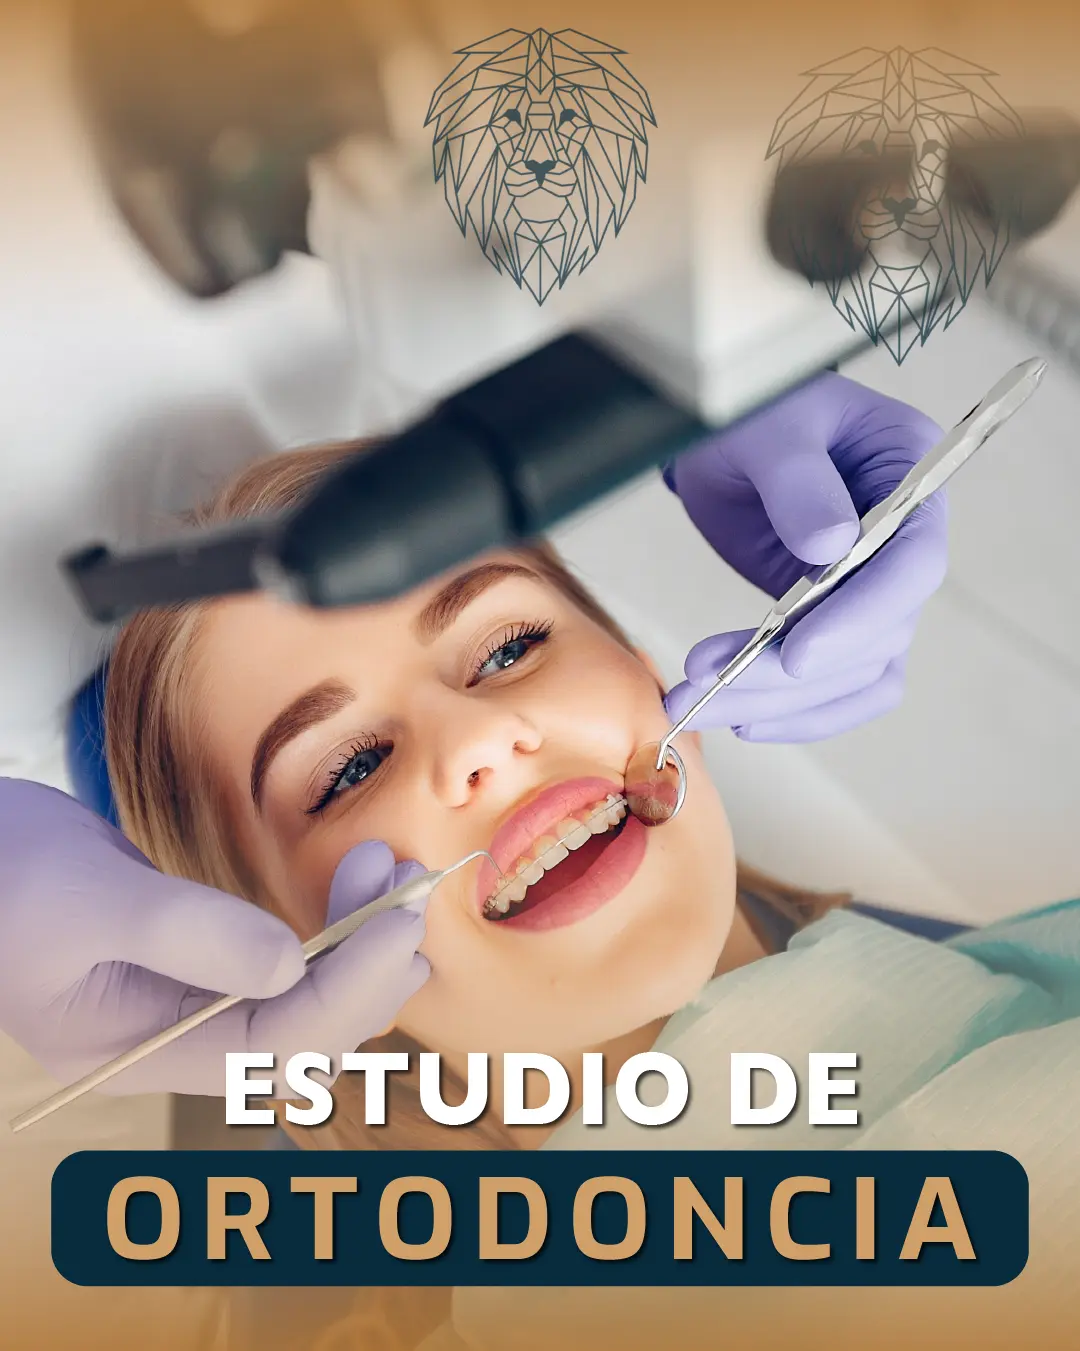 El Estudio de Ortodoncia: Tu Primer Paso hacia una Sonrisa Radiante